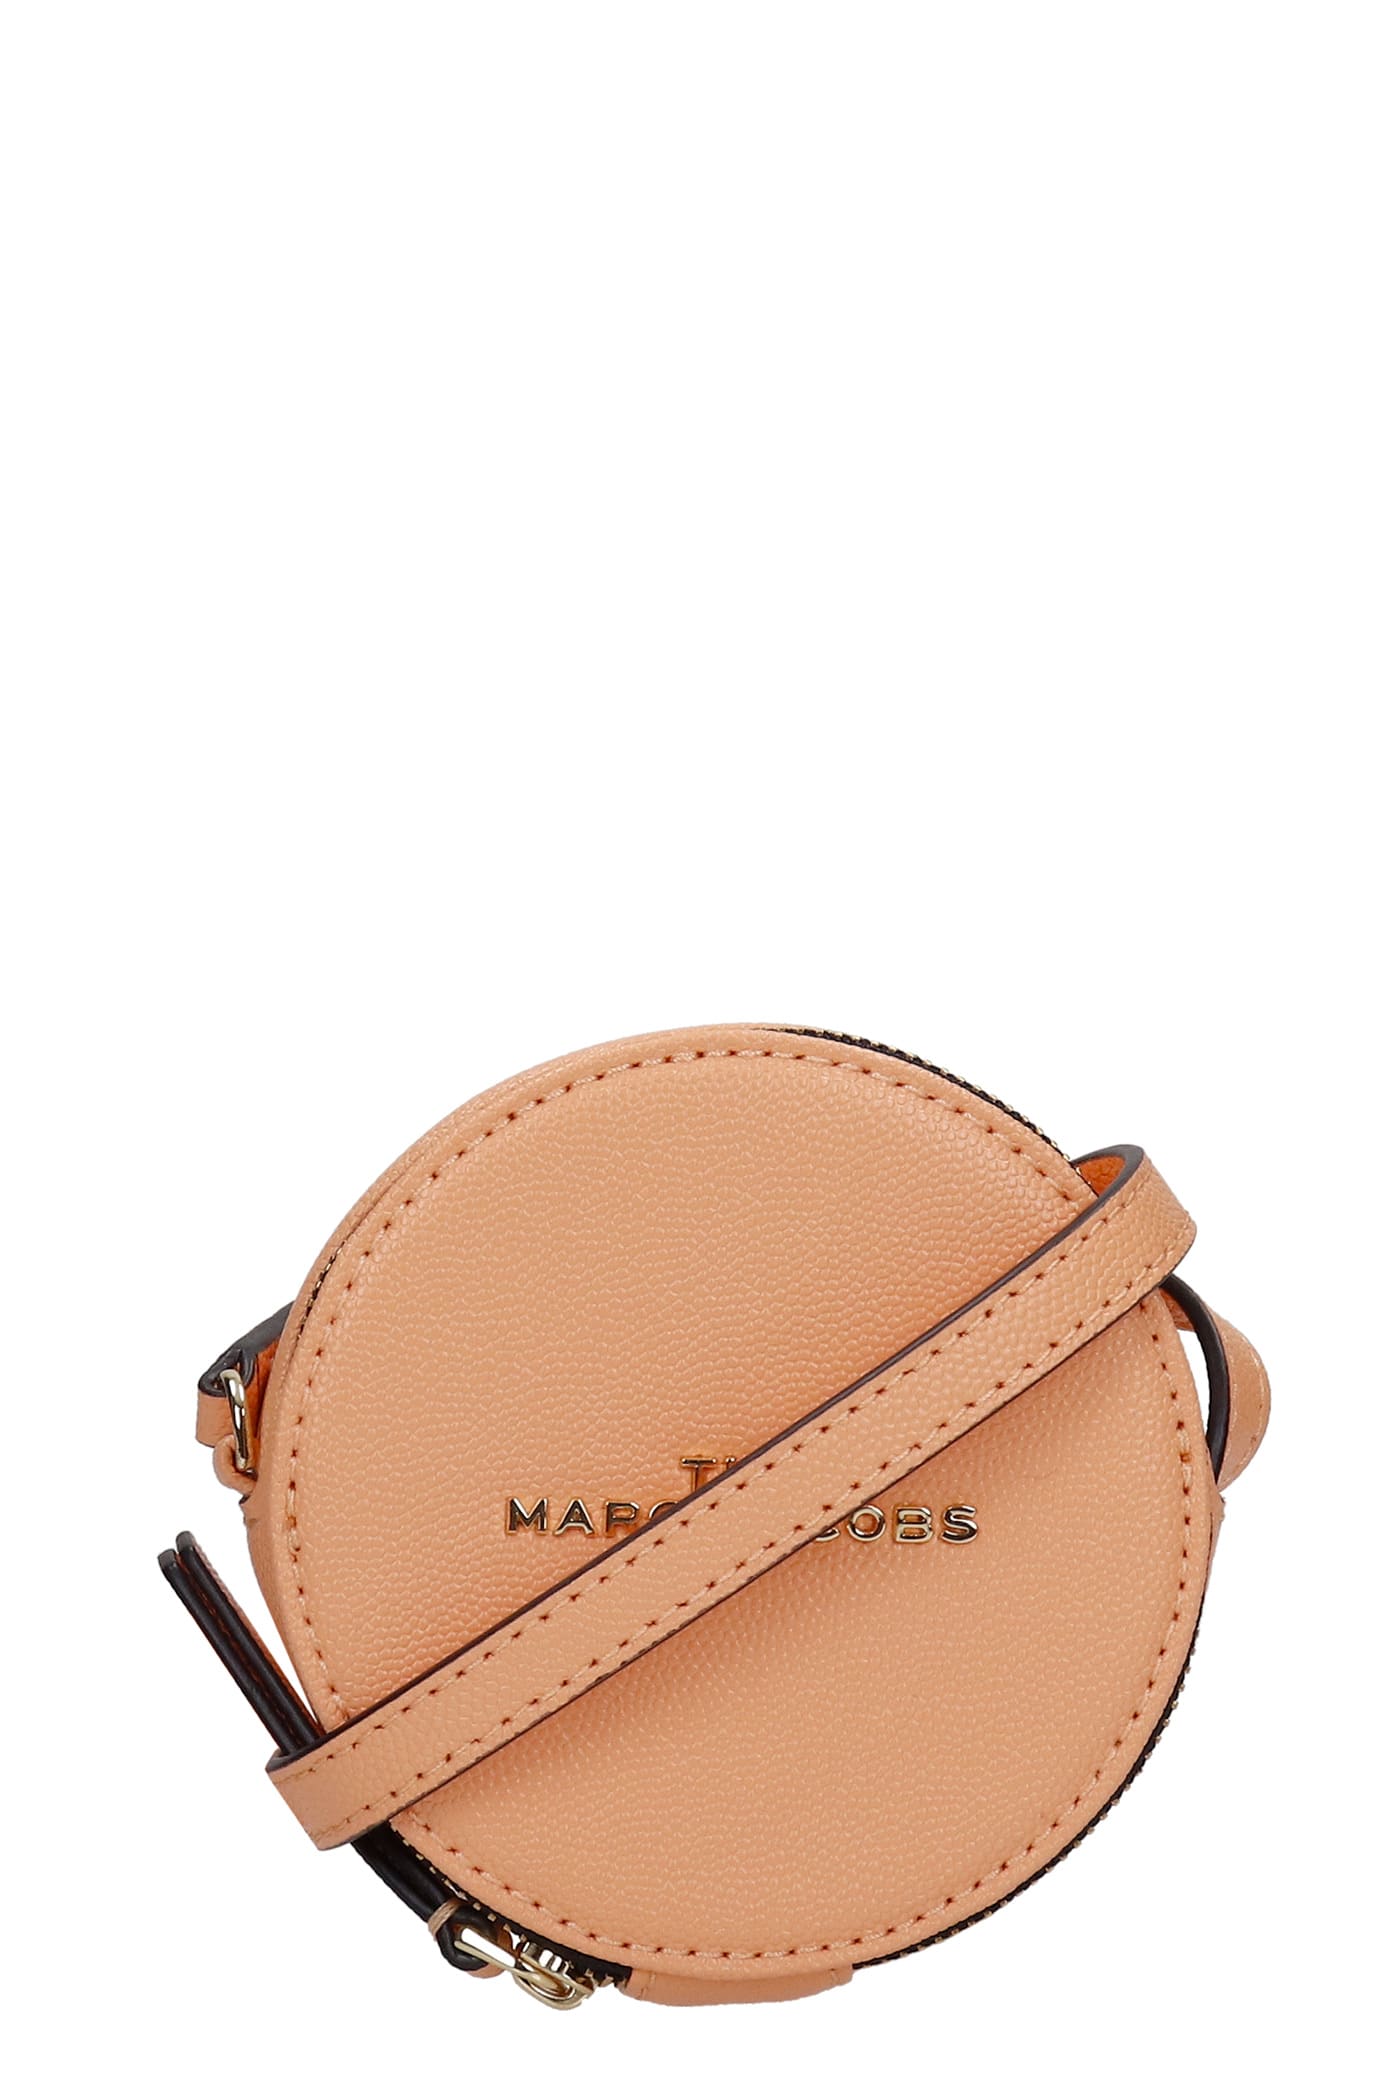 Marc Jacobs Shoulder Bag In Orange Leather